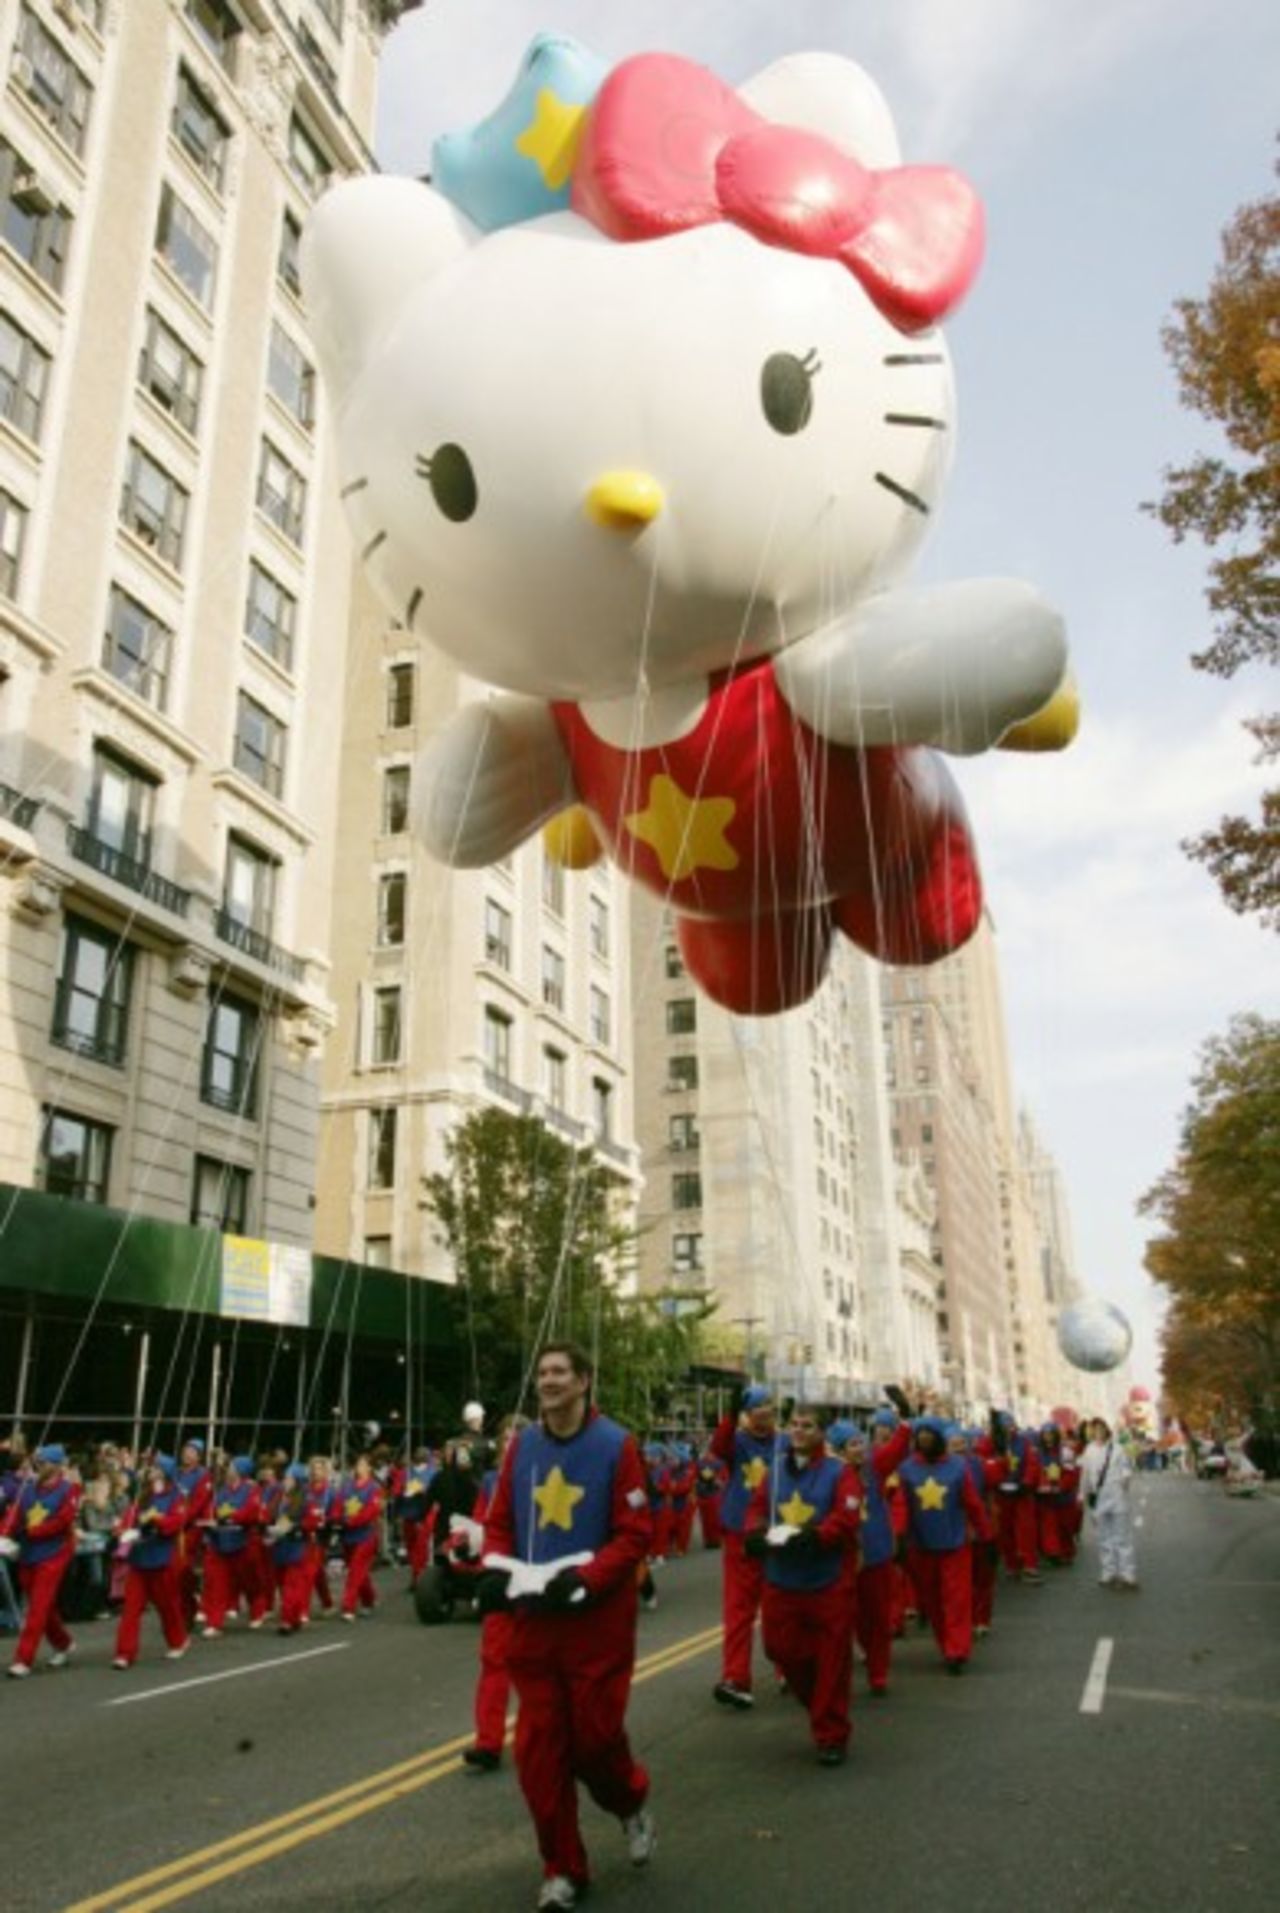 El globo de Hello Kitty es exhibido durante el Desfile de Acción de Gracias de Macy's en Nueva York del año 2007.